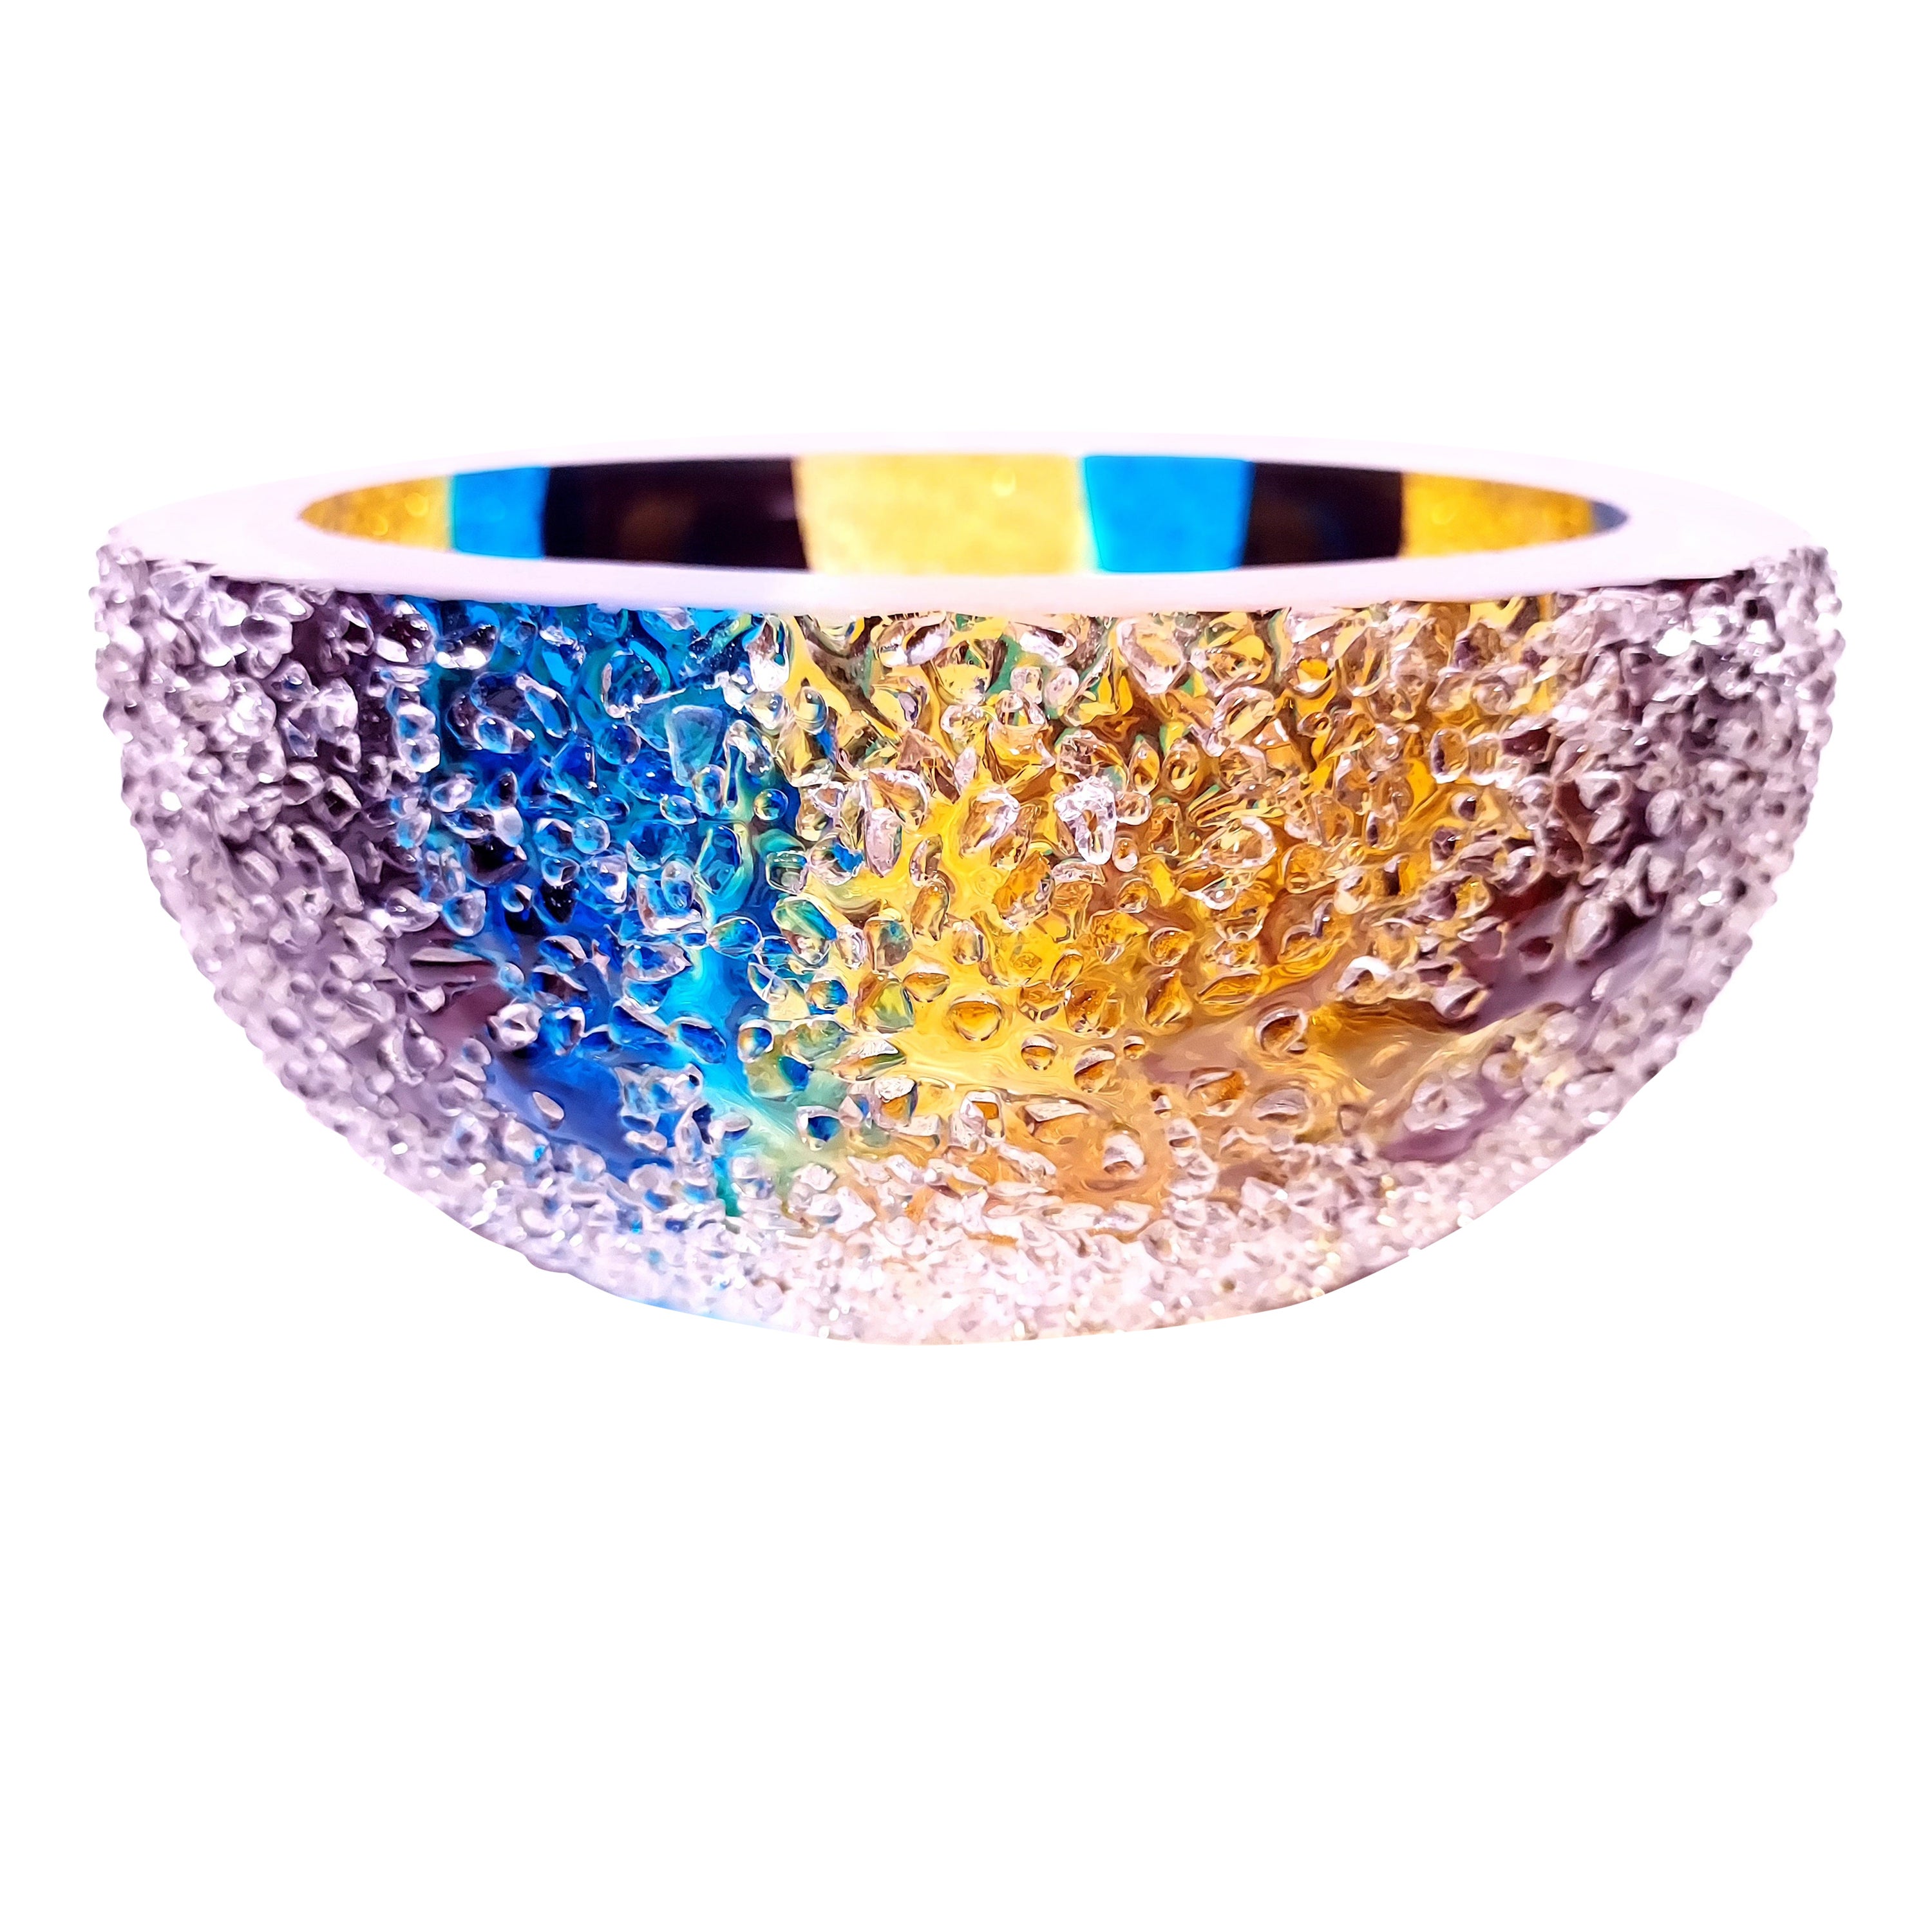 Bols colorés en cristal CYM, récipient en verre de luxe contemporain fait à la main